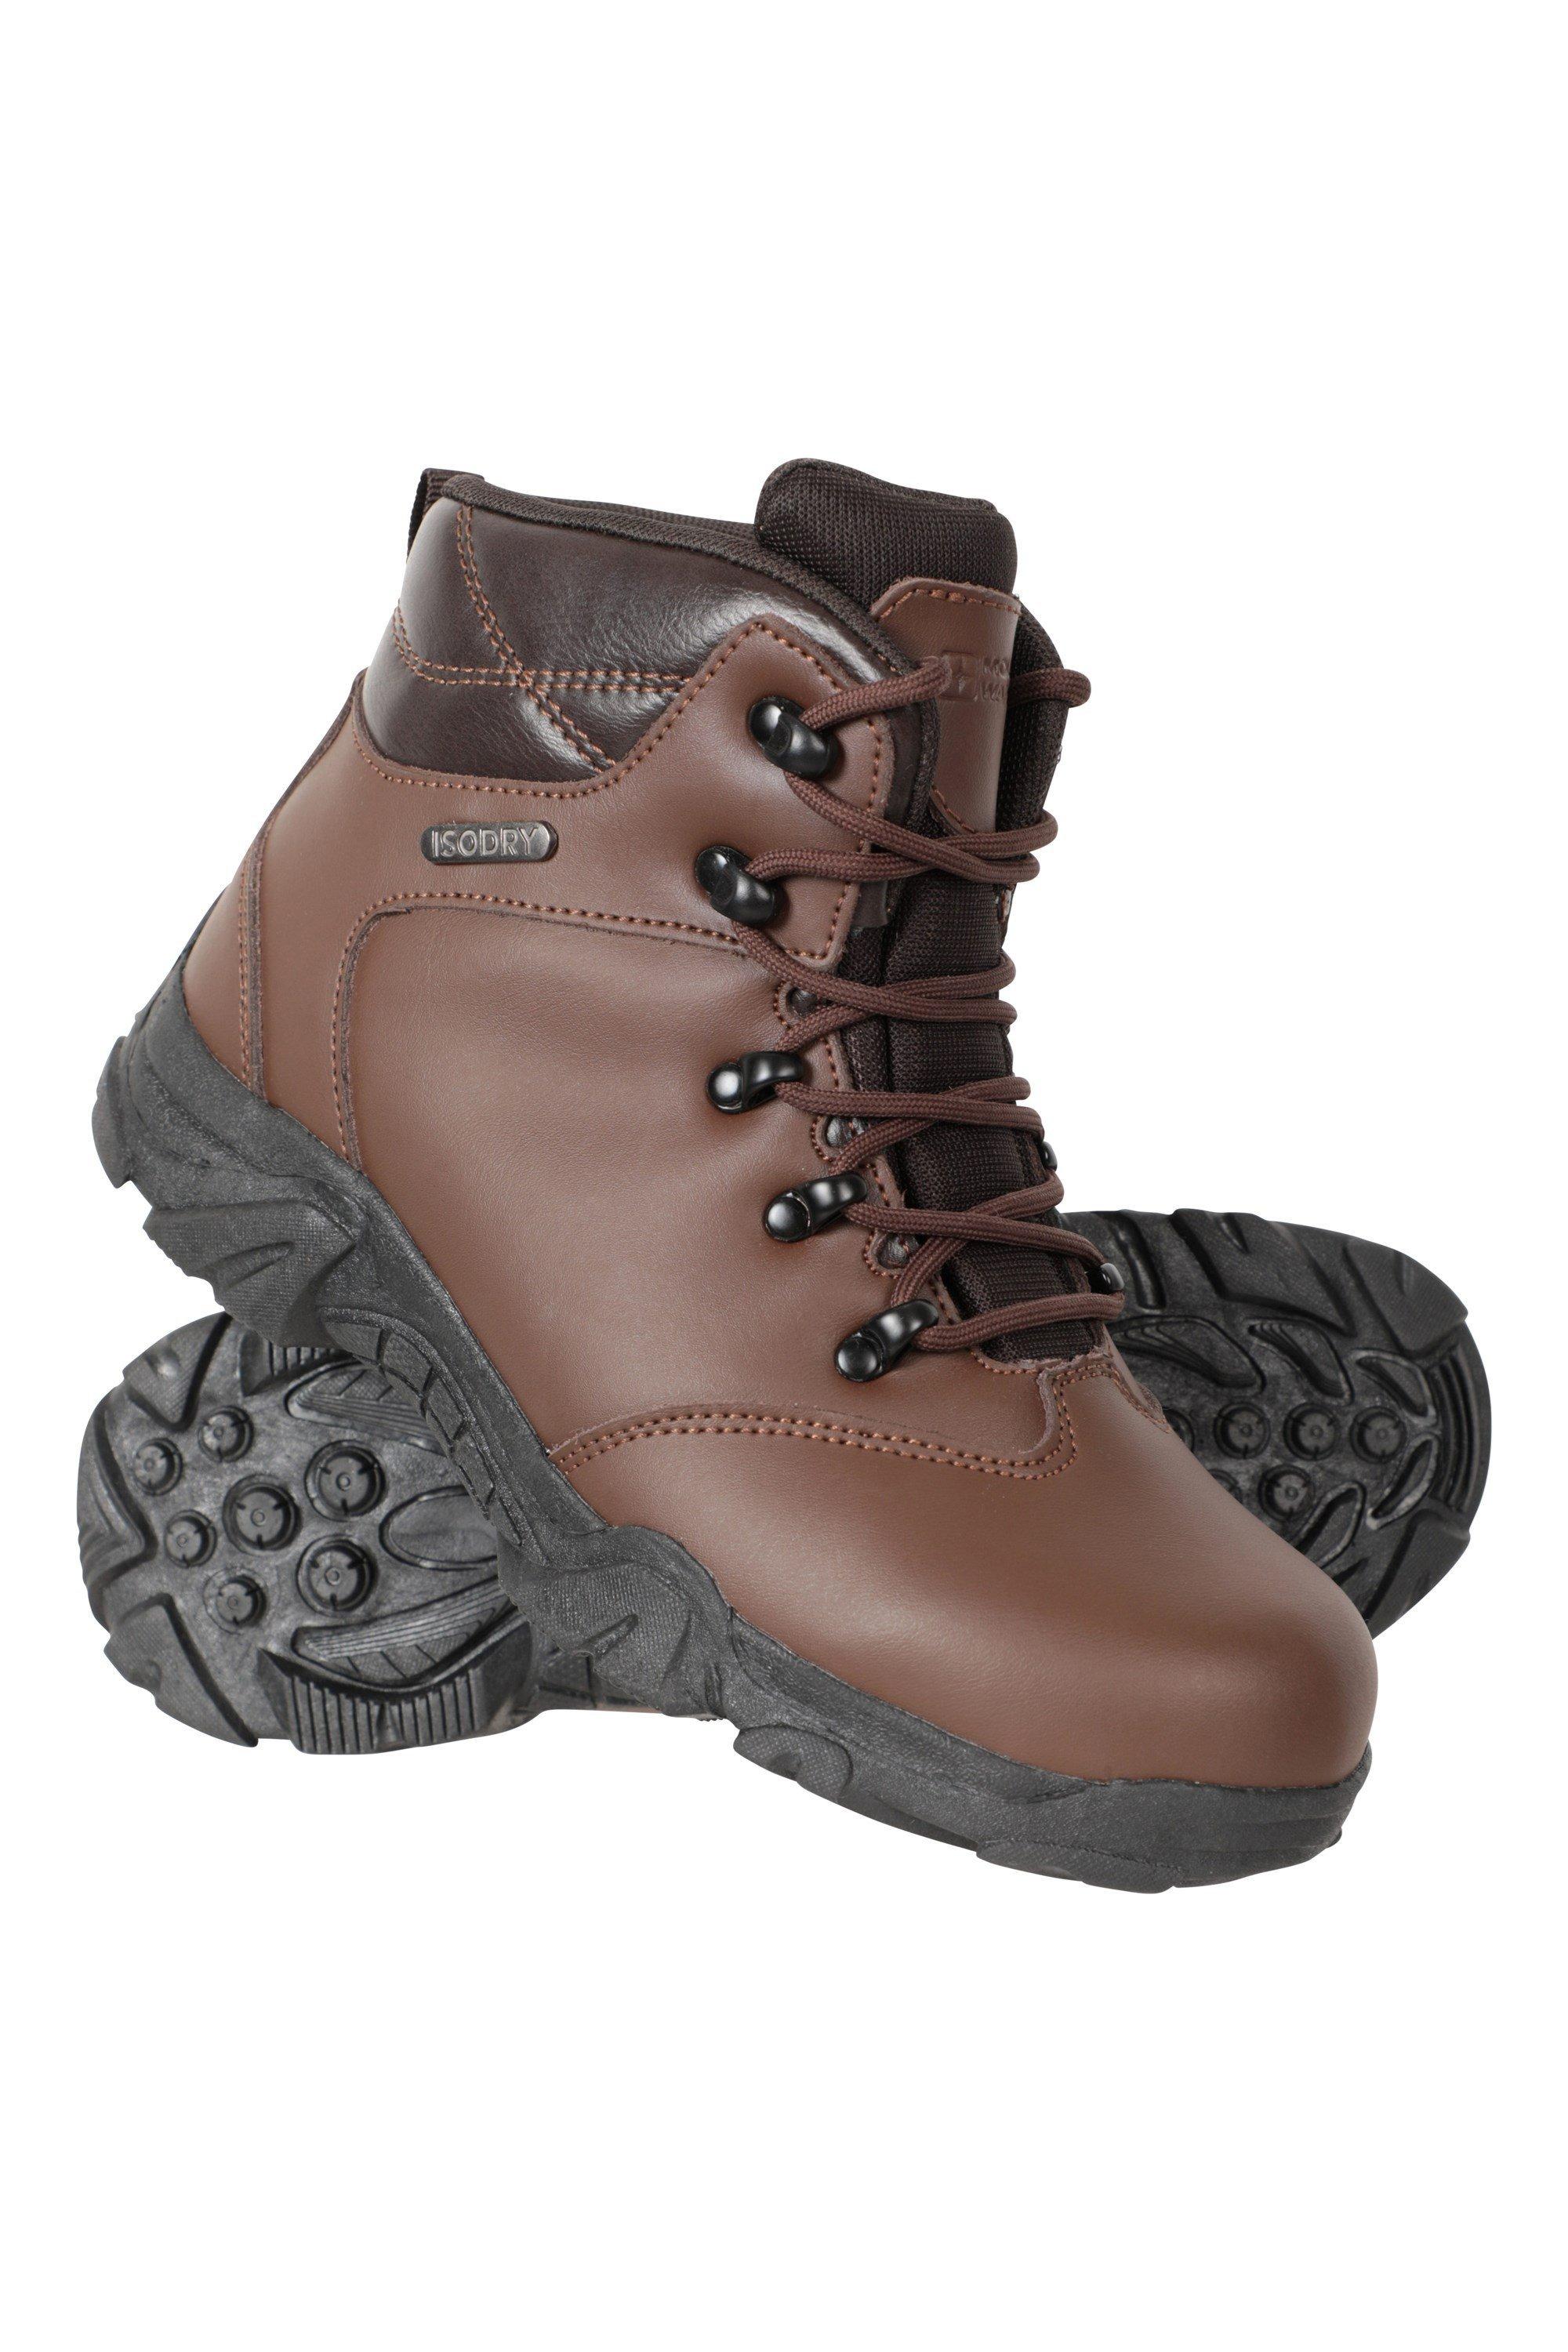 Водонепроницаемые кожаные прогулочные ботинки для походов Mountain Warehouse, коричневый data warehouse analyst